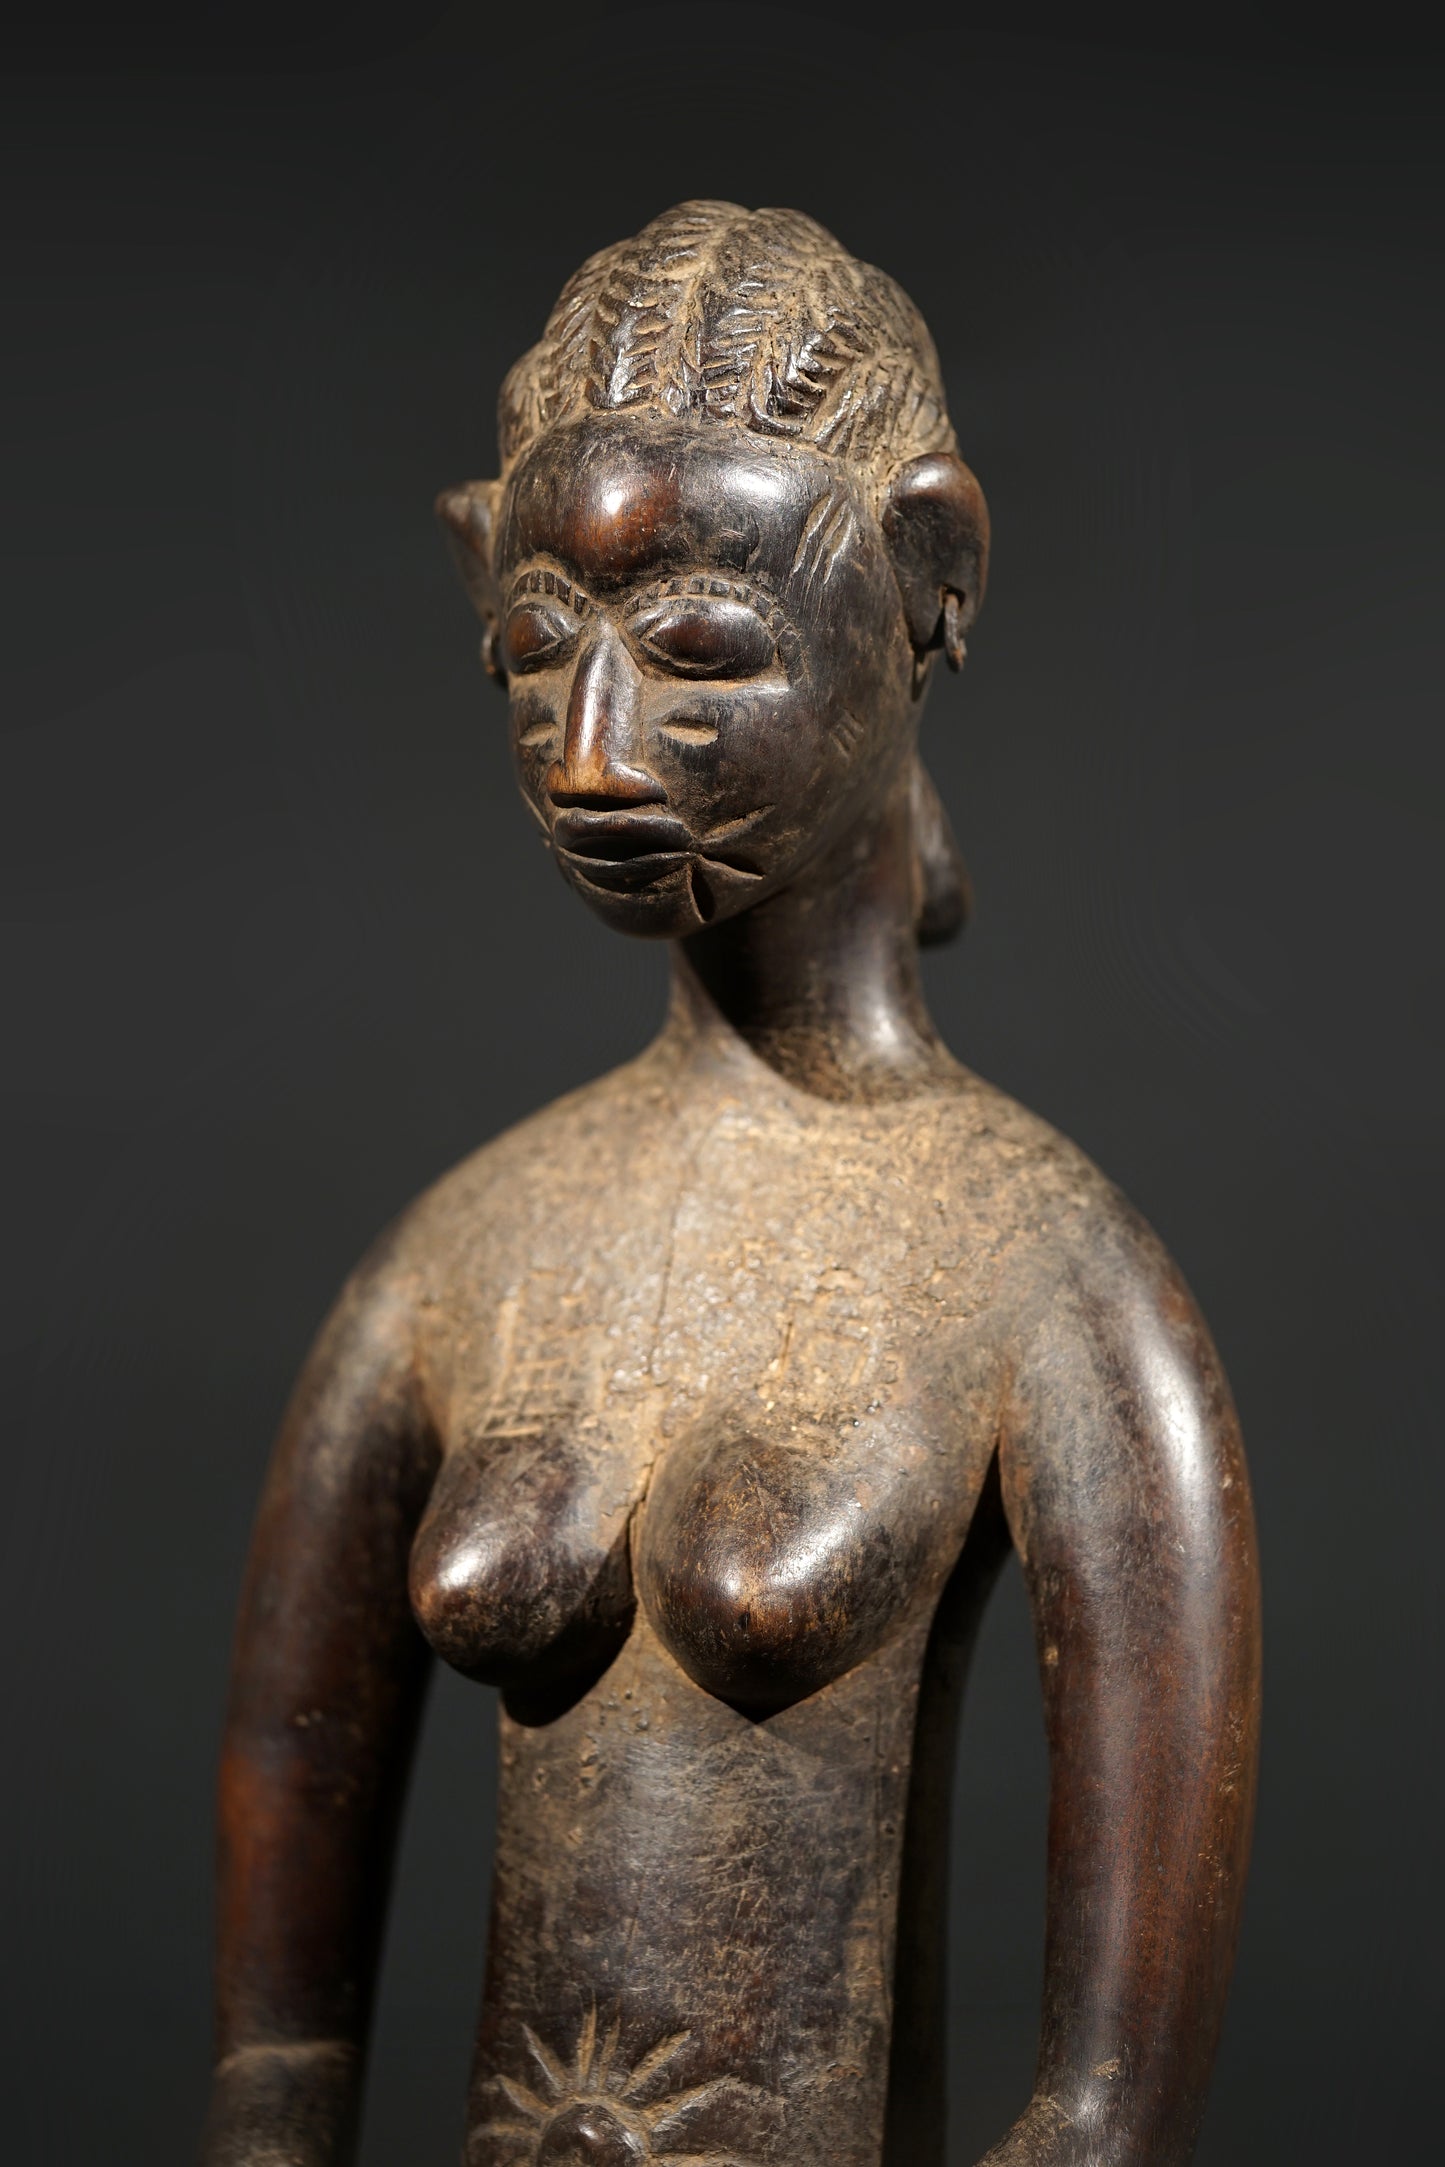 A female Senufo sculpture